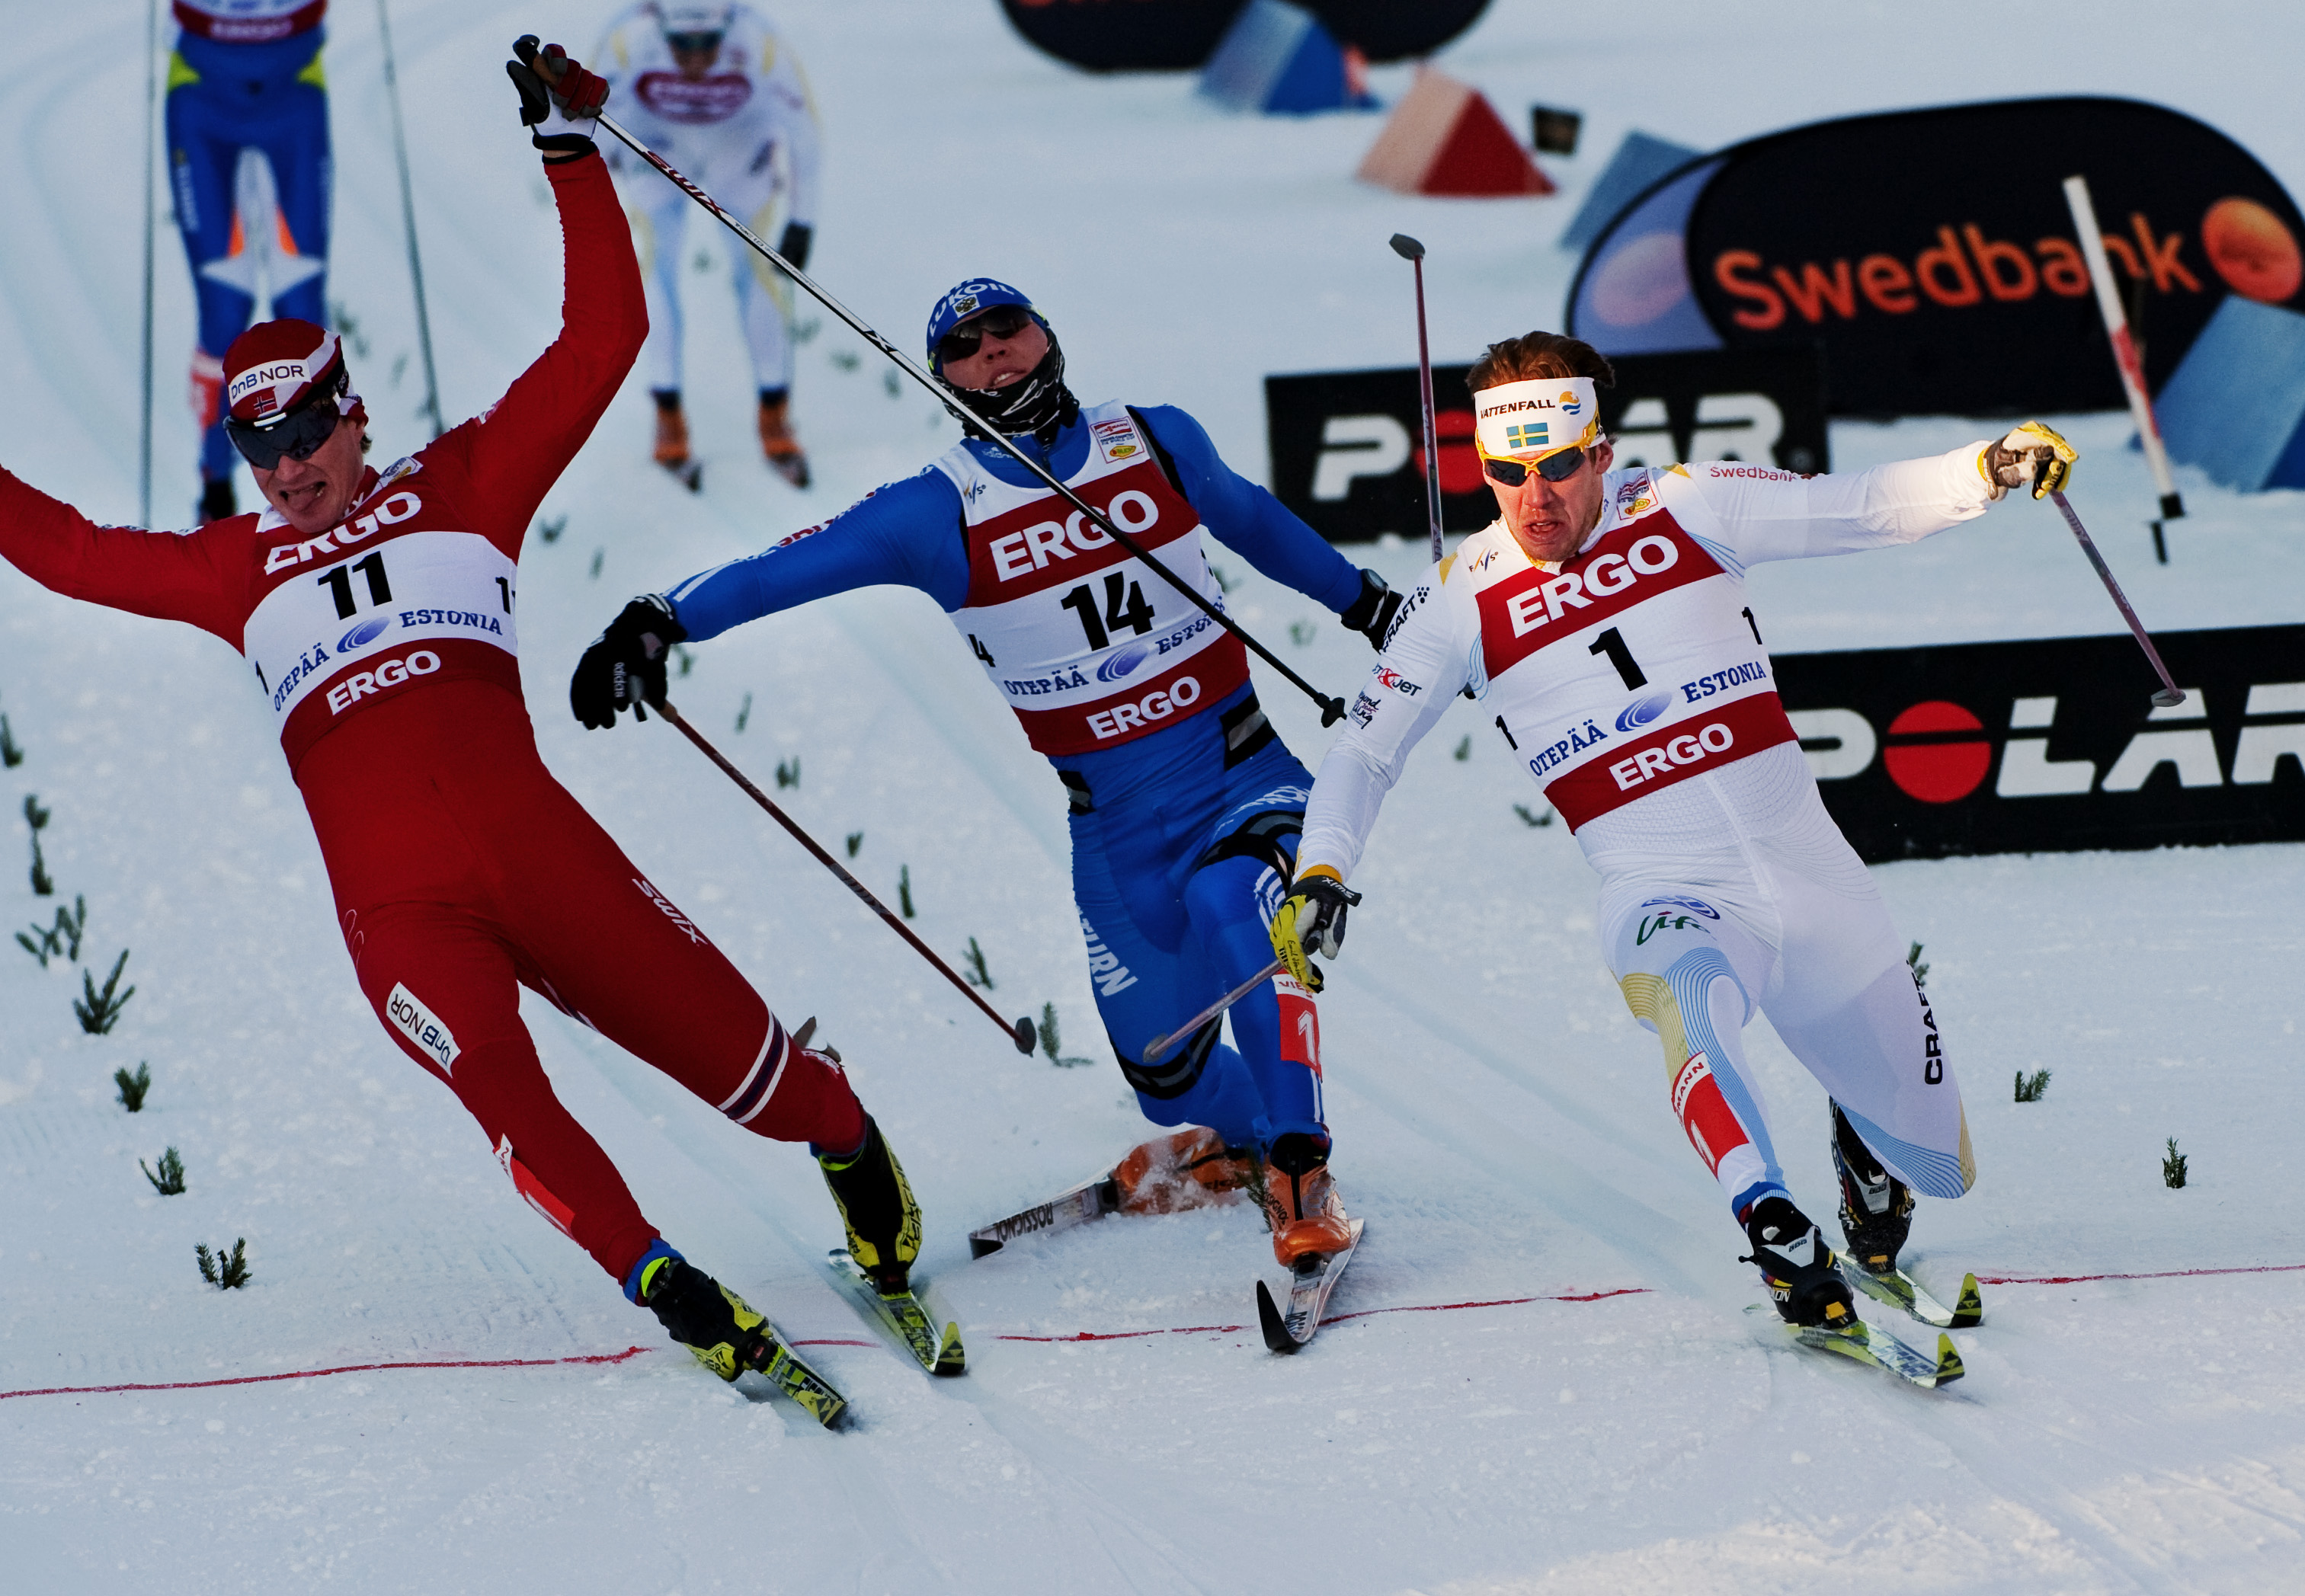 Tre åkare flög över mållinjen tillsammans - Emil Jönsson fick segern. 